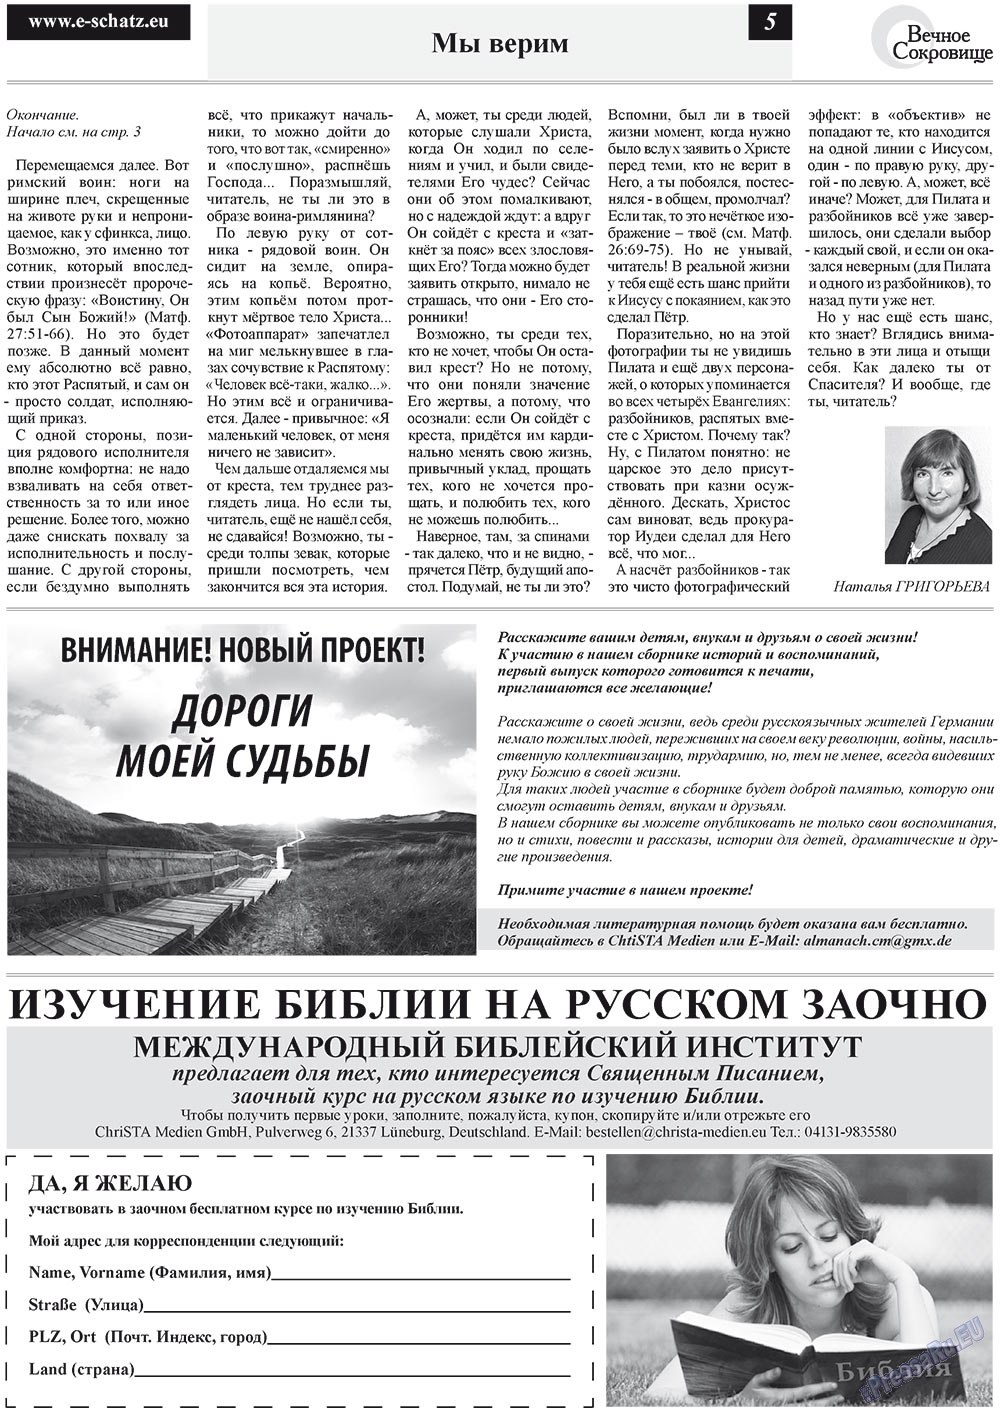 Вечное сокровище, газета. 2012 №2 стр.5